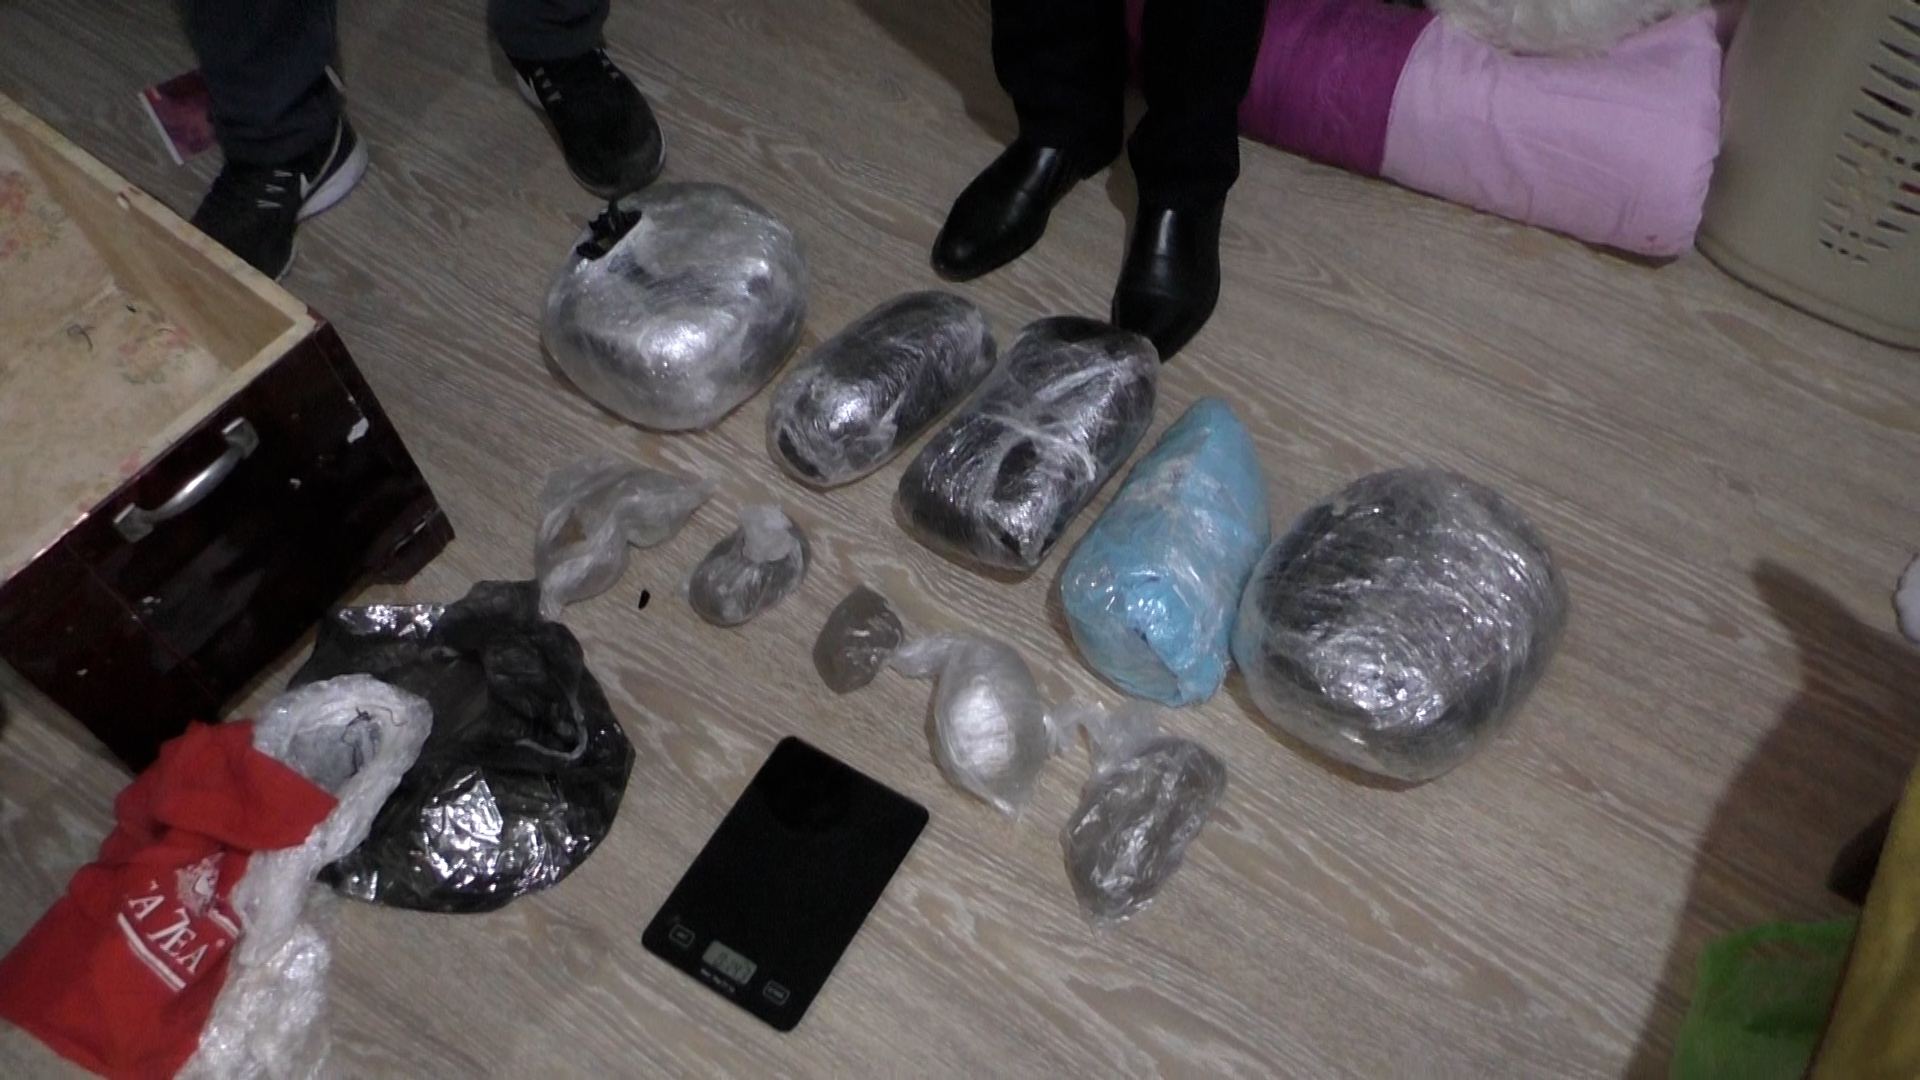 Bakıda narkotik satışını və paylanmasını təşkil edən İran vətəndaşı saxlanılıb (FOTO/VİDEO)